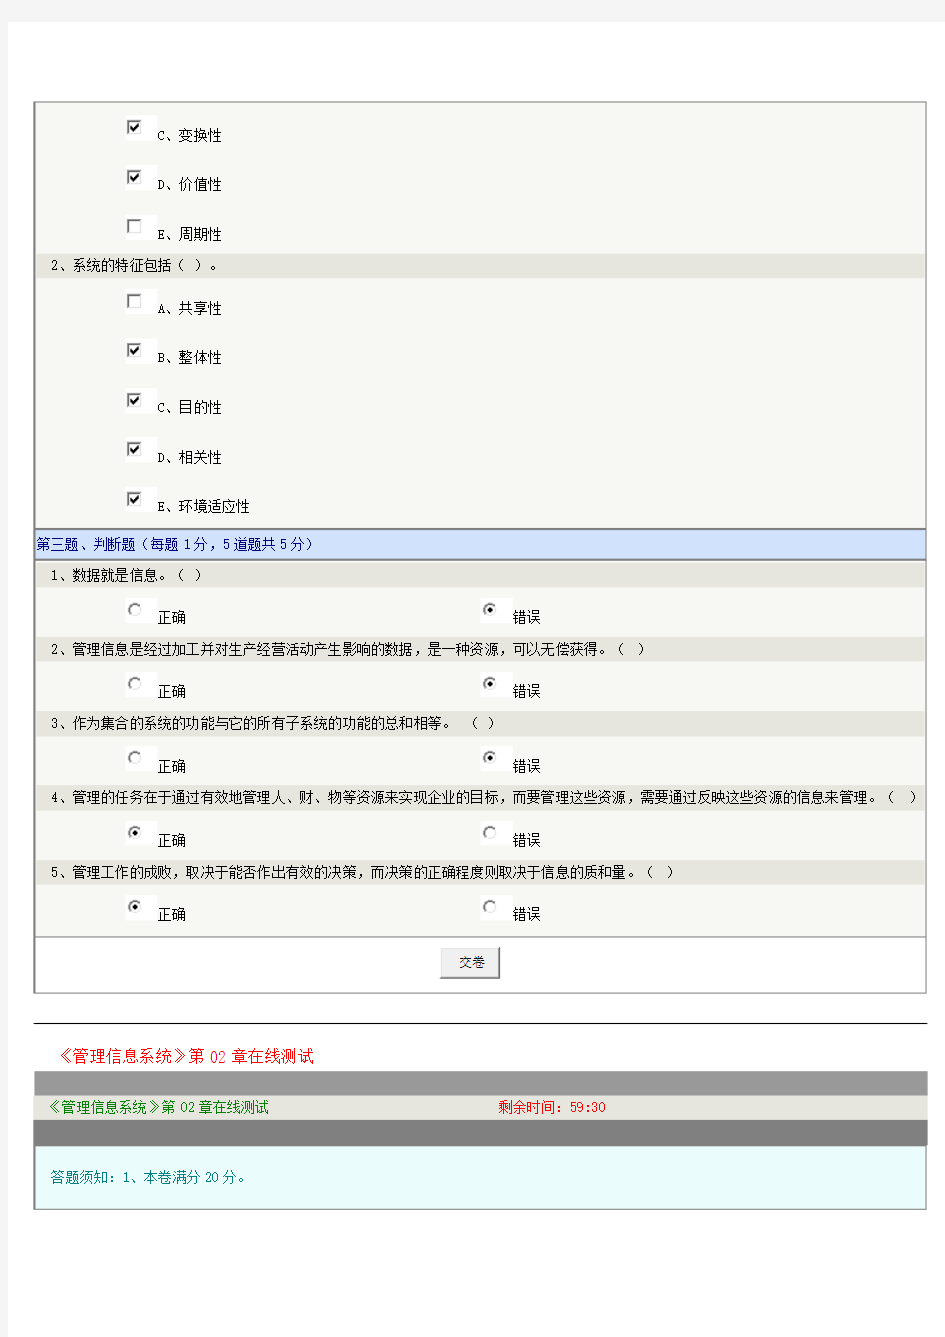 郑州大学《管理信息系统(工商管理)》在线测试